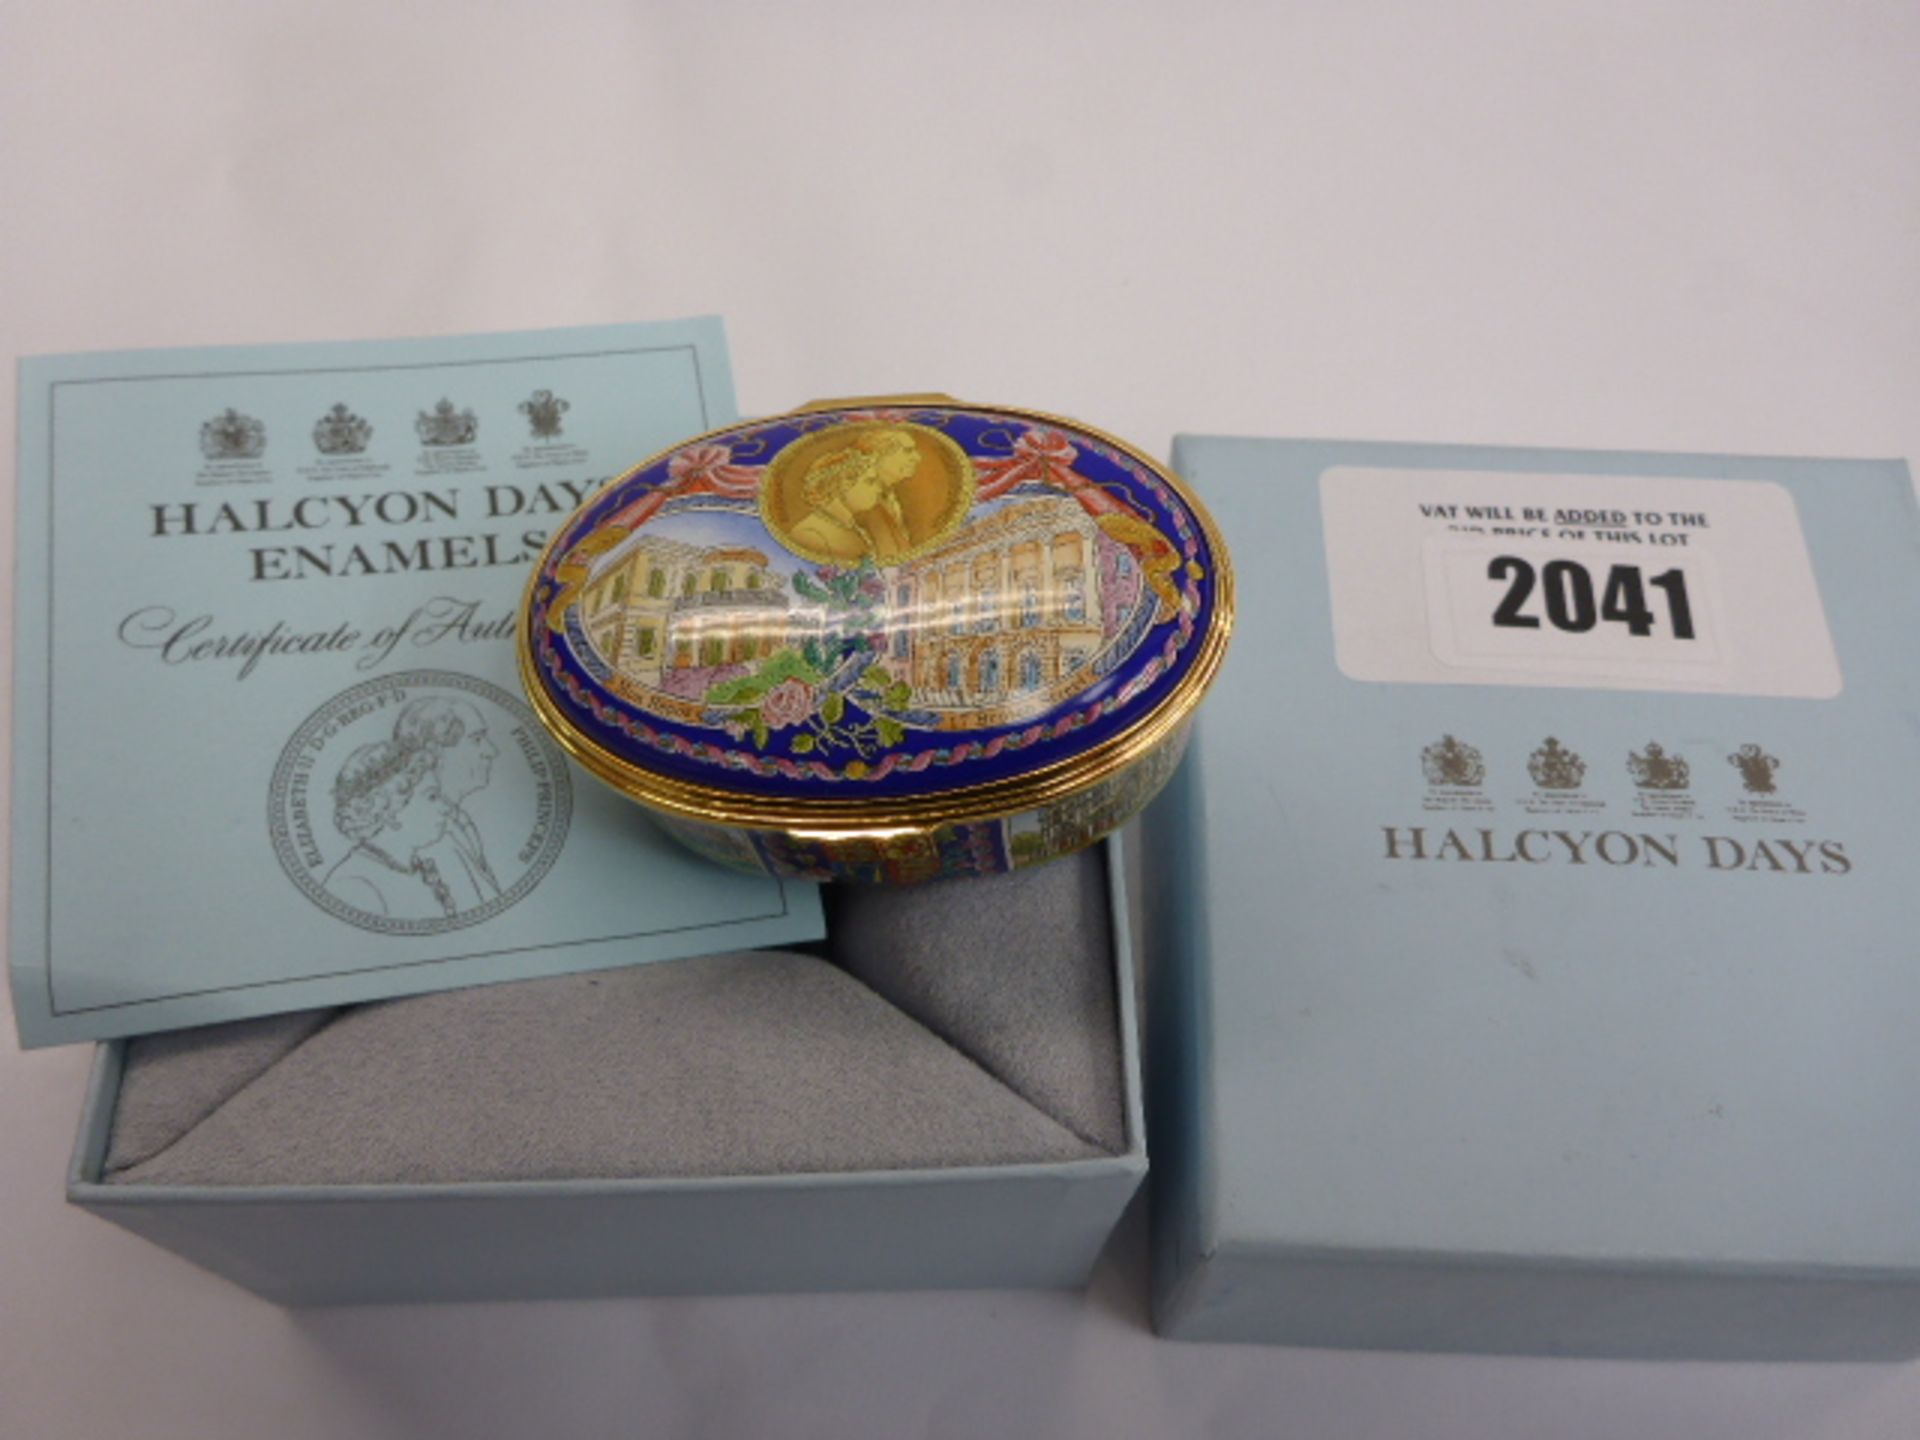 Halcyon Days limited edition enamelled box - Queen Elizabeth II 80th Birthday